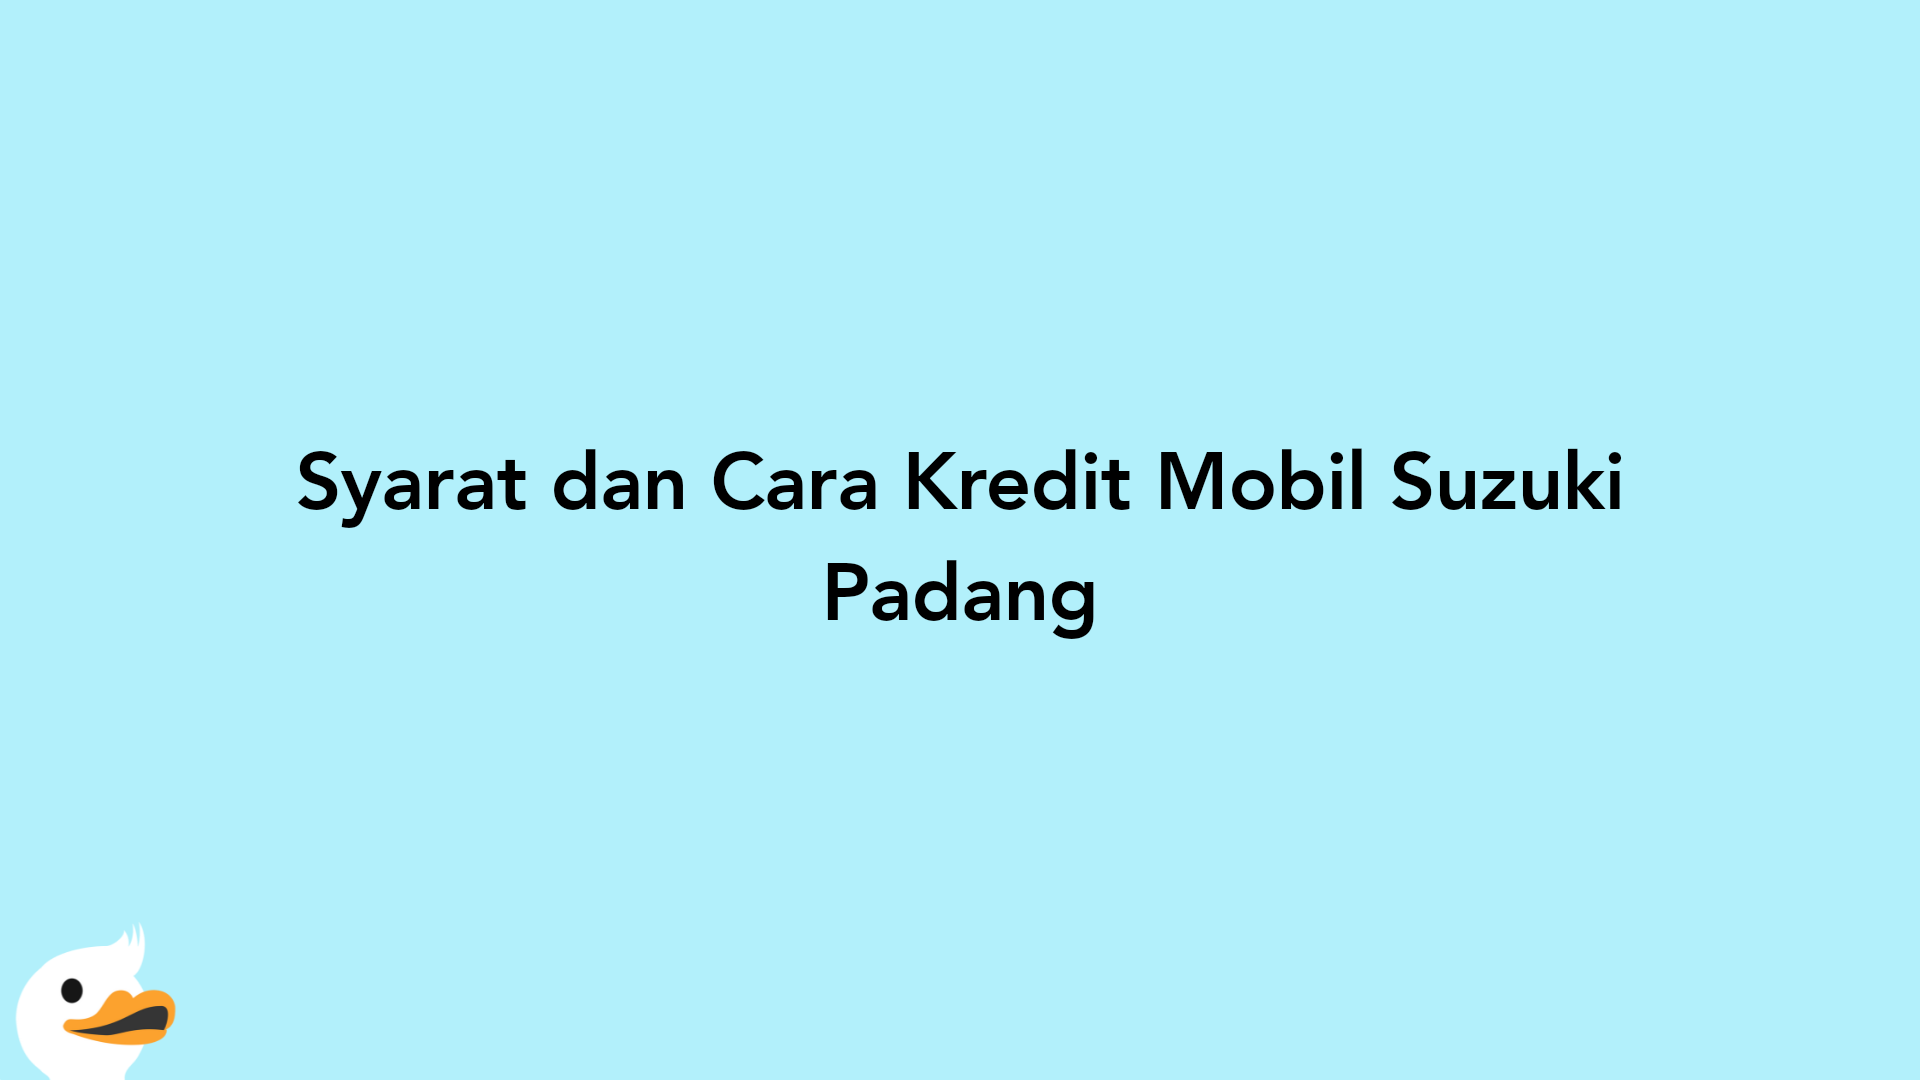 Syarat dan Cara Kredit Mobil Suzuki Padang